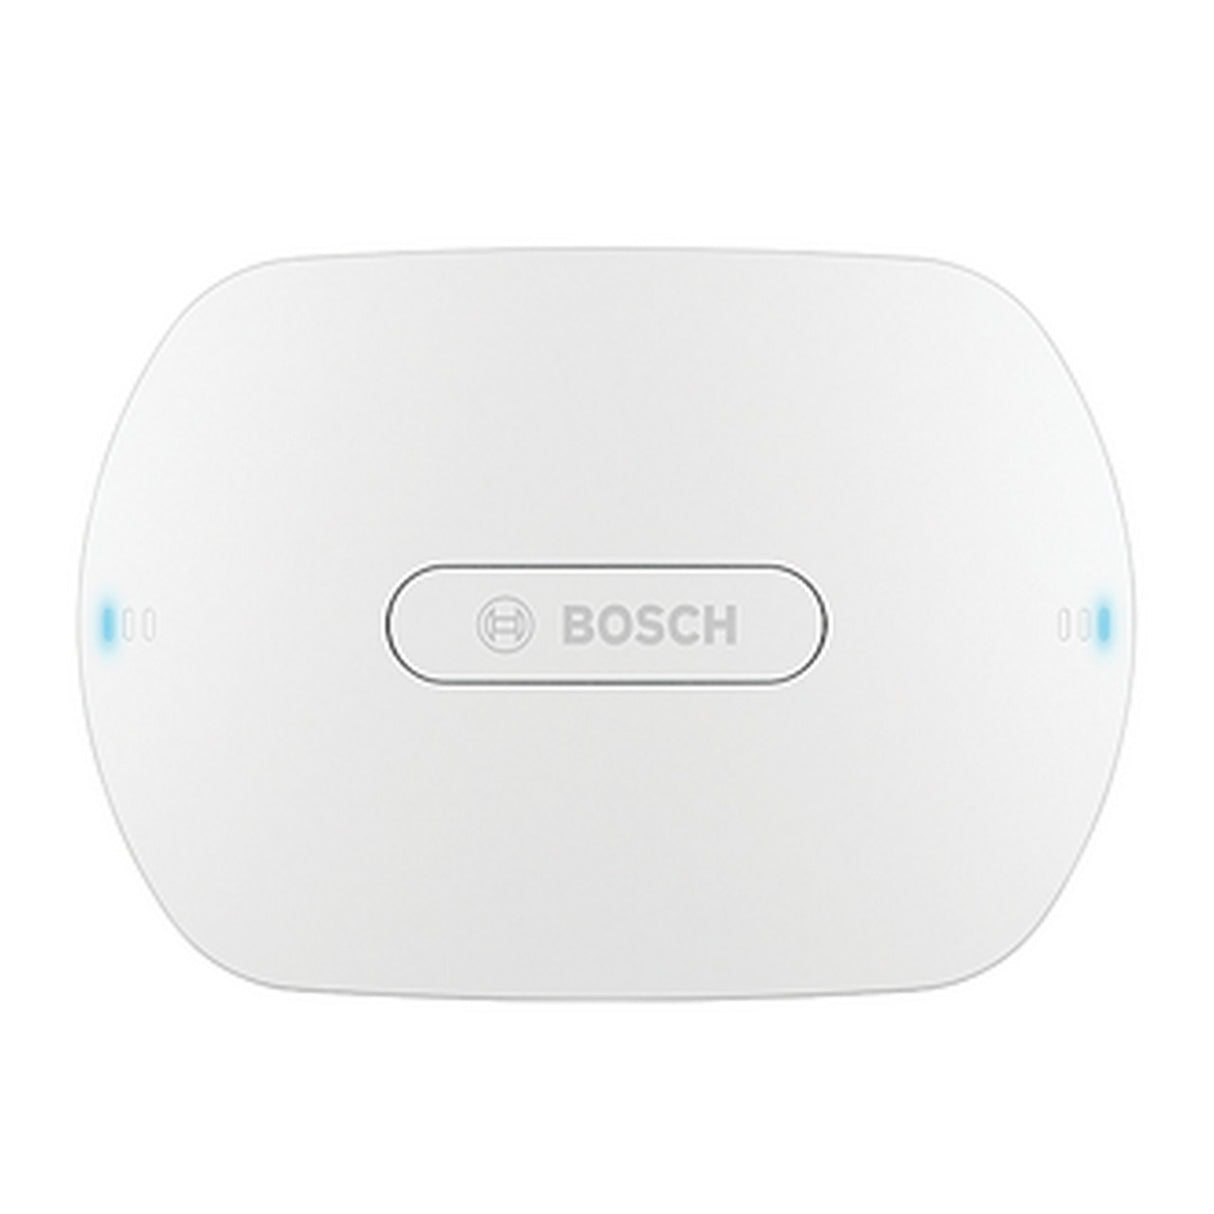 Bosch DCNM-WAP | Wireless Access Point